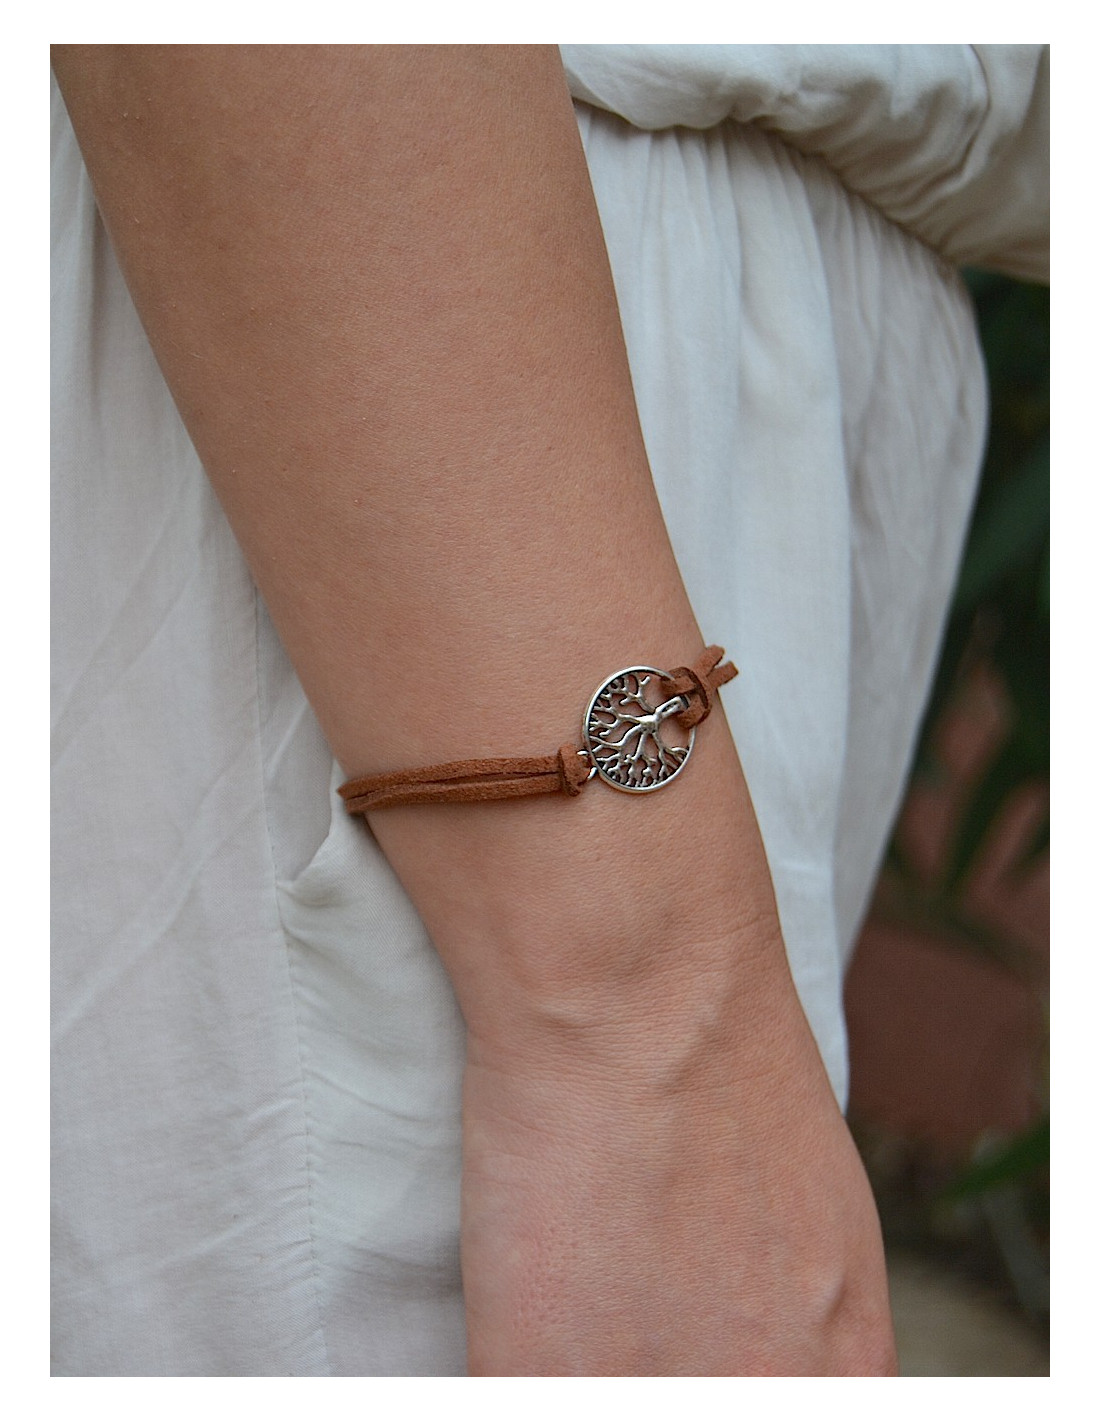 ☆ Bracelet élastique perle rose poudré - Style bohème chic